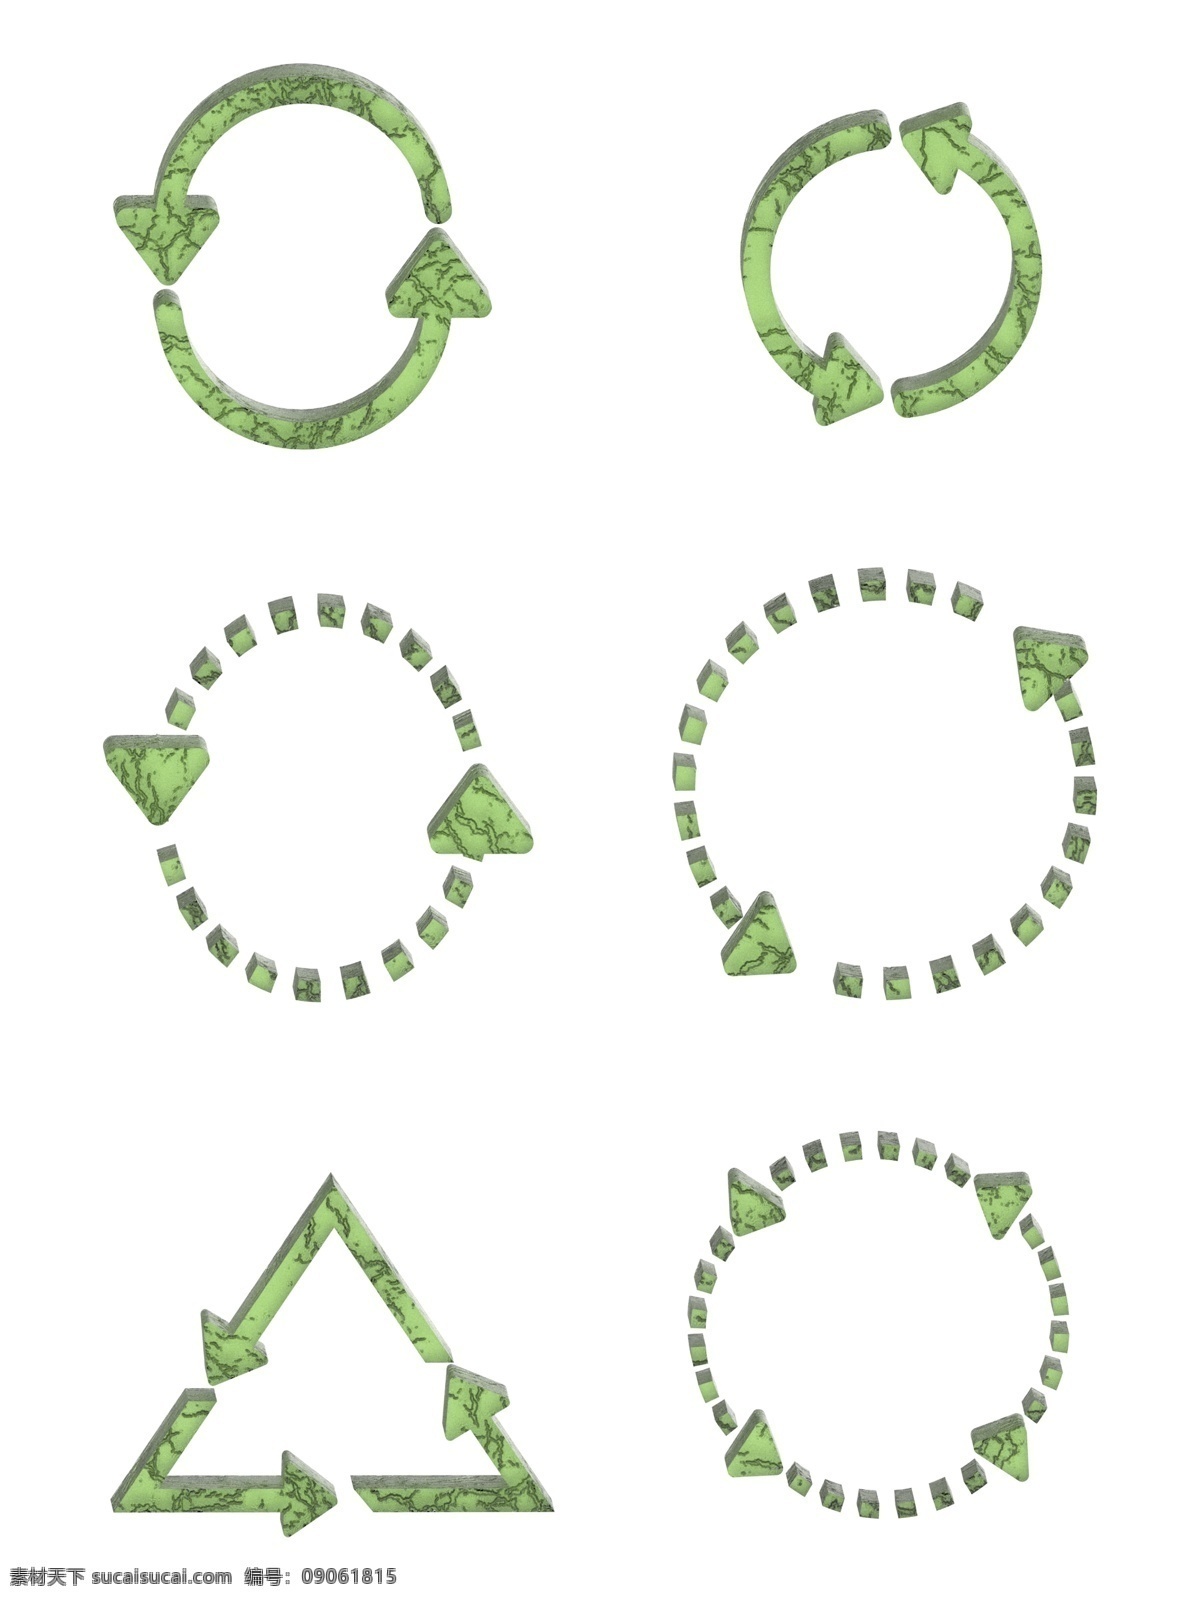 立体 碎 纹 玻璃 环状 绿色 循环 箭头 立体箭头 绿色箭头 循环箭头 特殊箭头 玻璃质感箭头